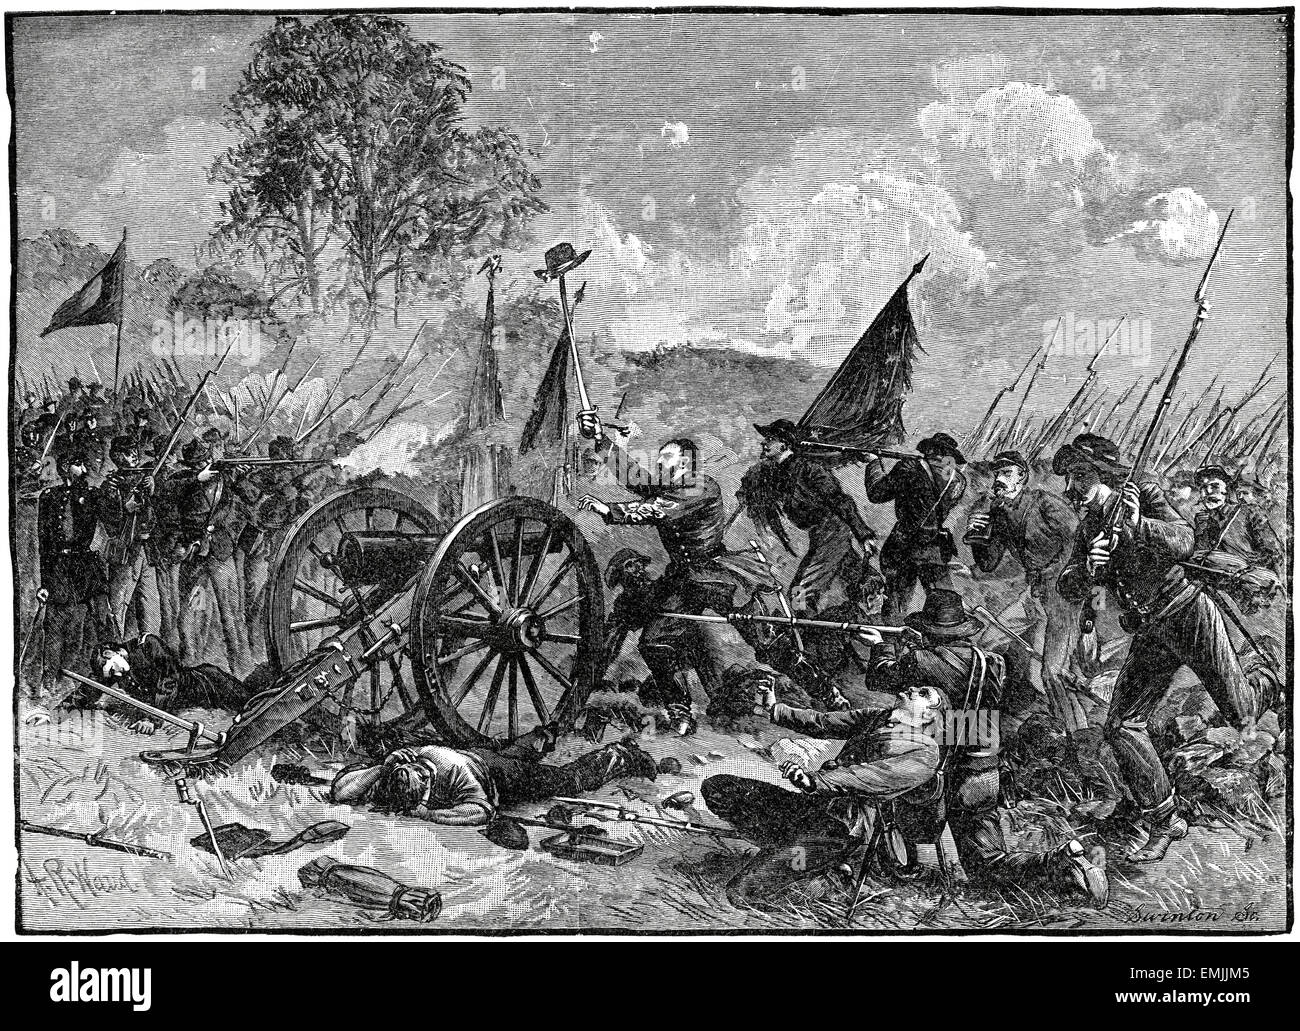 "Picketts Charge bei Gettysburg" Schlacht von Gettysburg, Amerikanischer Bürgerkrieg, 1863 Stockfoto